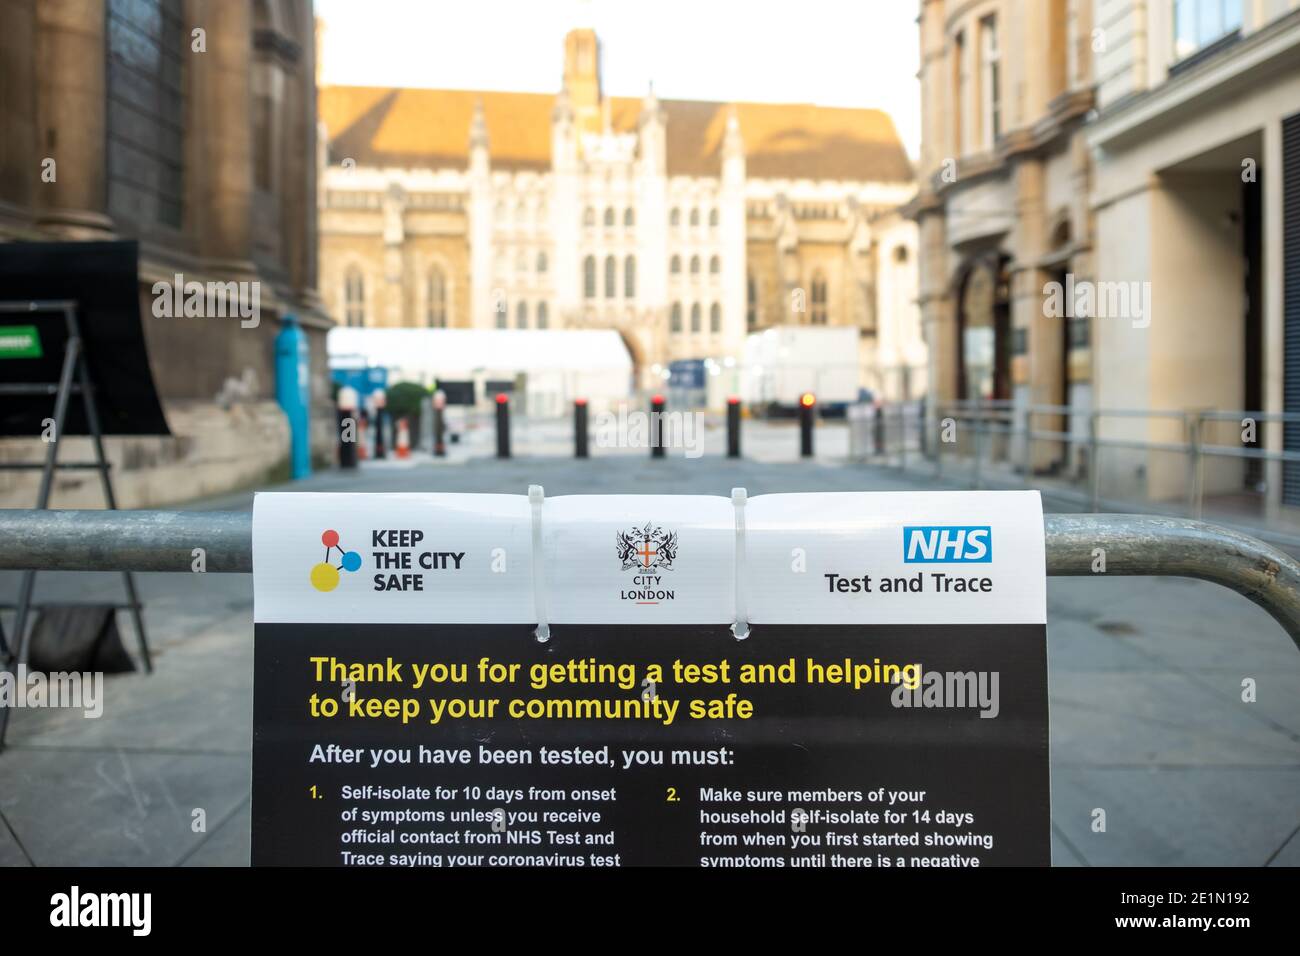 Londres- janvier 2021: Centre NHS Test and Trace installé dans la ville de Londres pour s'attaquer à la pandémie du coronavirus Covid 19 Banque D'Images